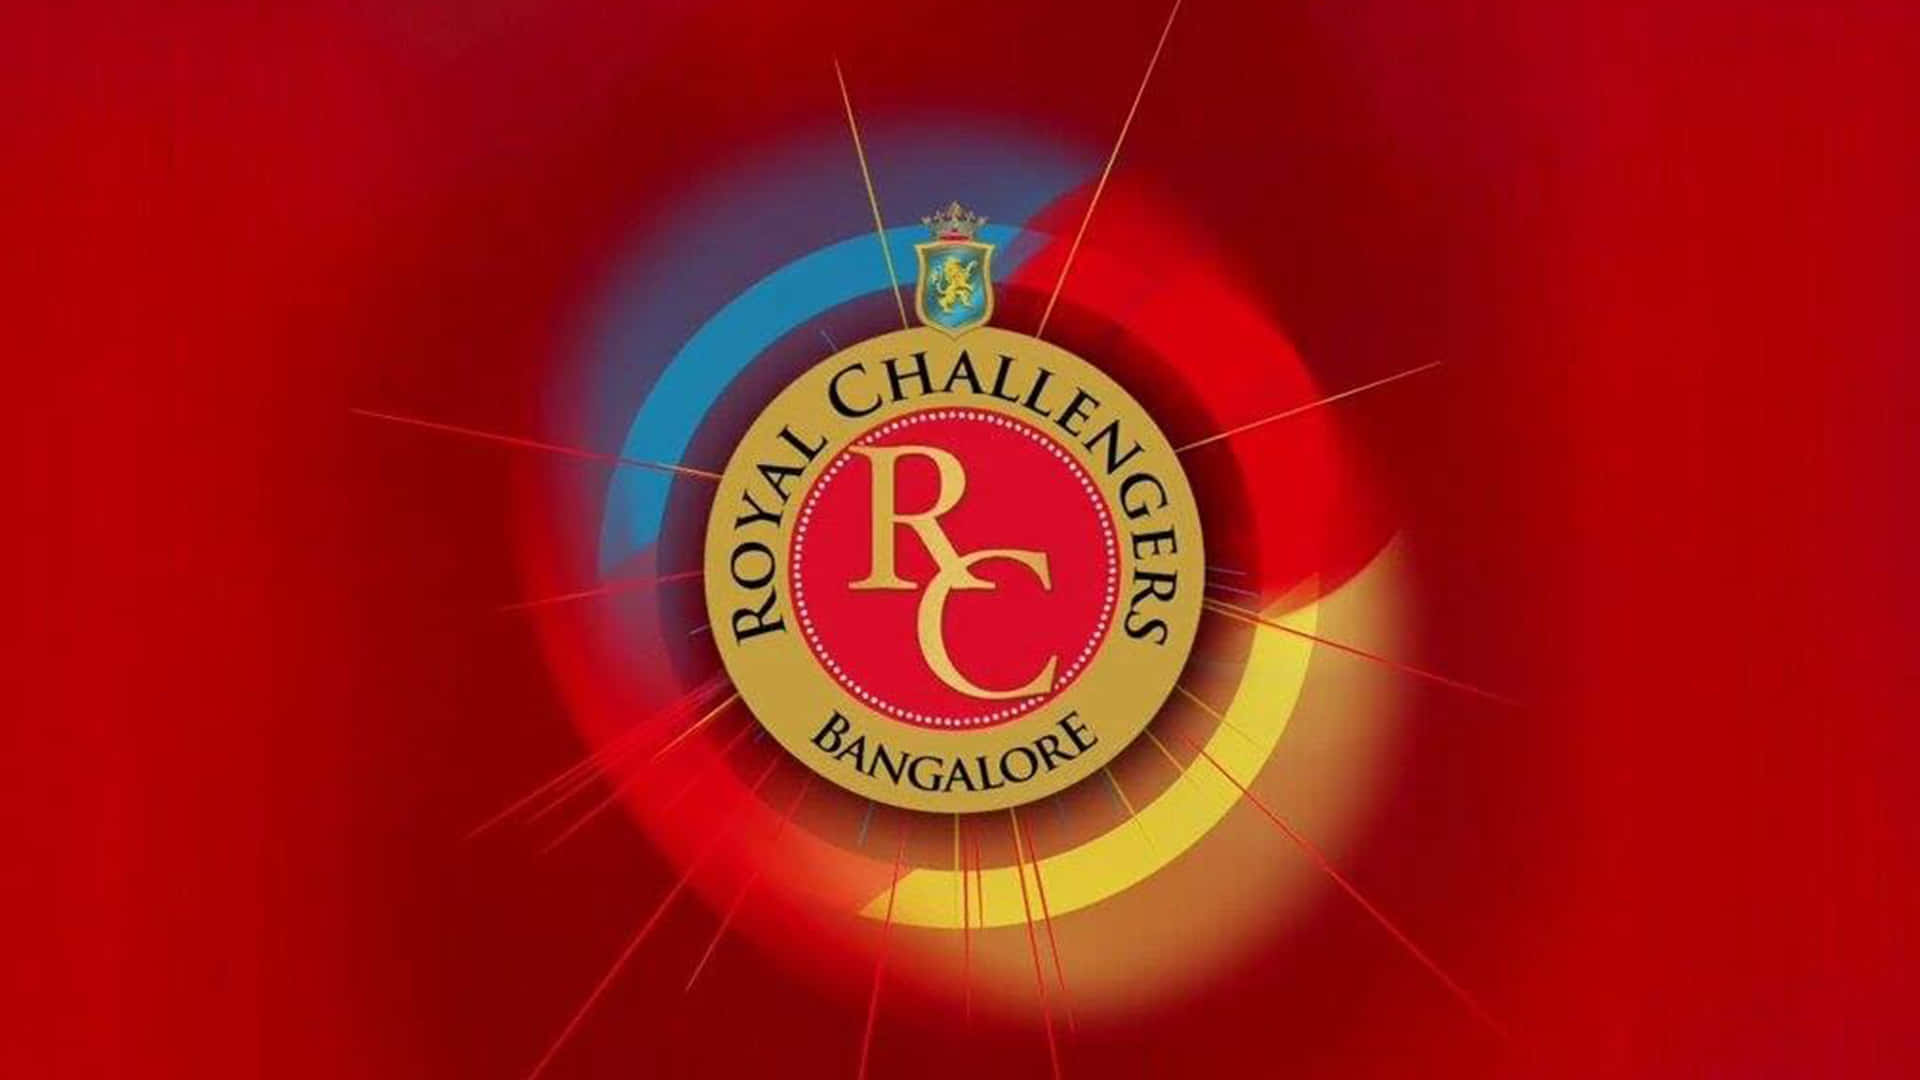 Royalchallengers Bangalore: Campioni Dell'opportunità